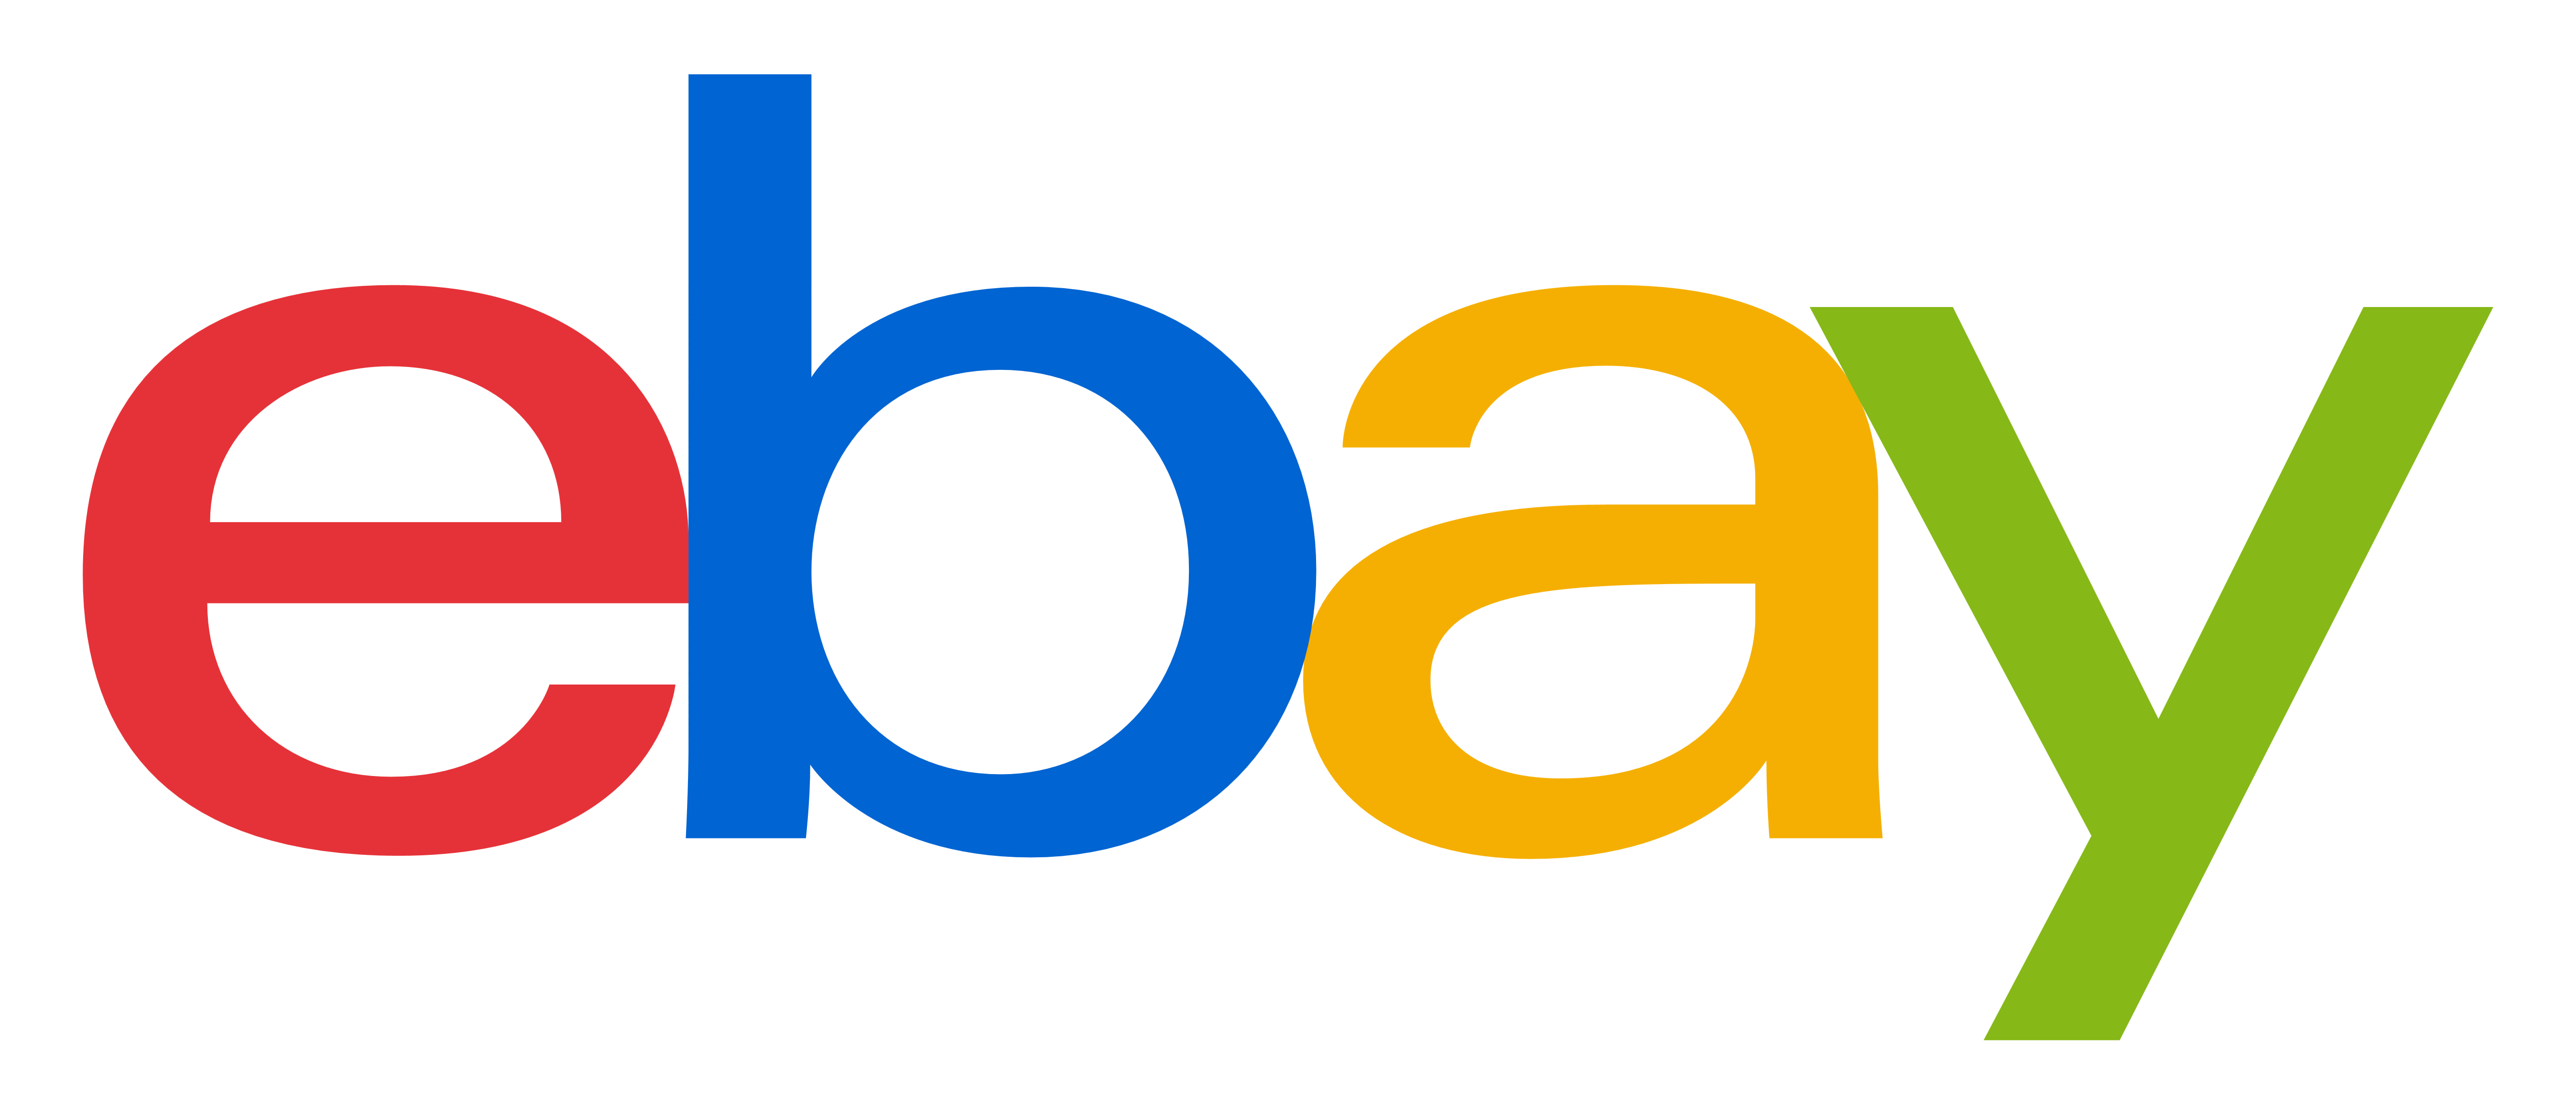 EBay Logo transparente Bilder